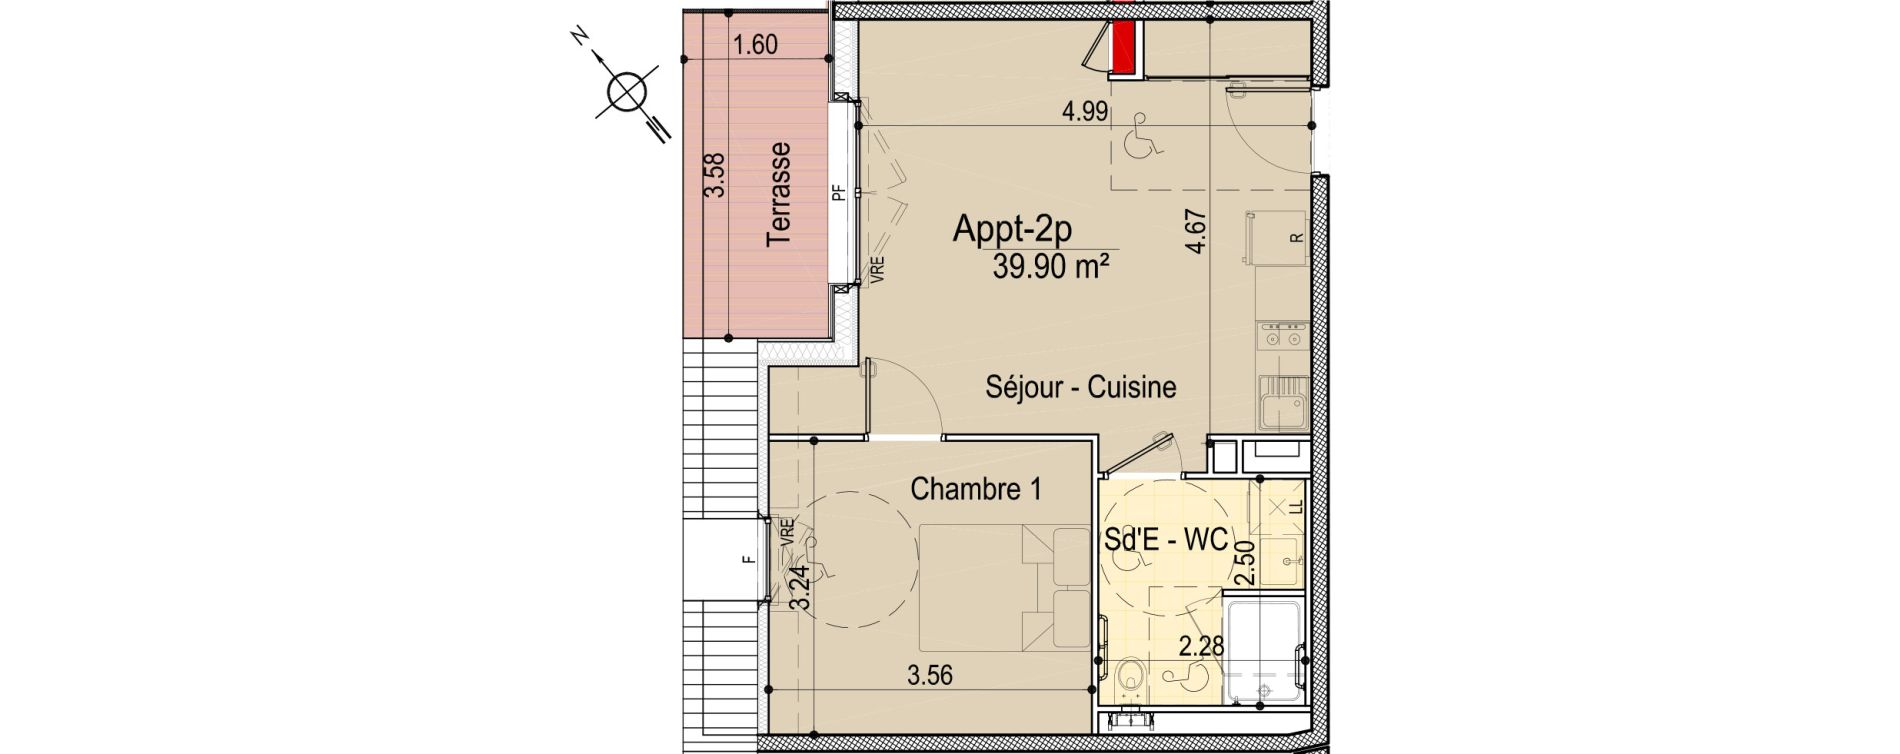 Appartement T2 de 39,90 m2 aux Sables-D'Olonne Le chateau d olonne